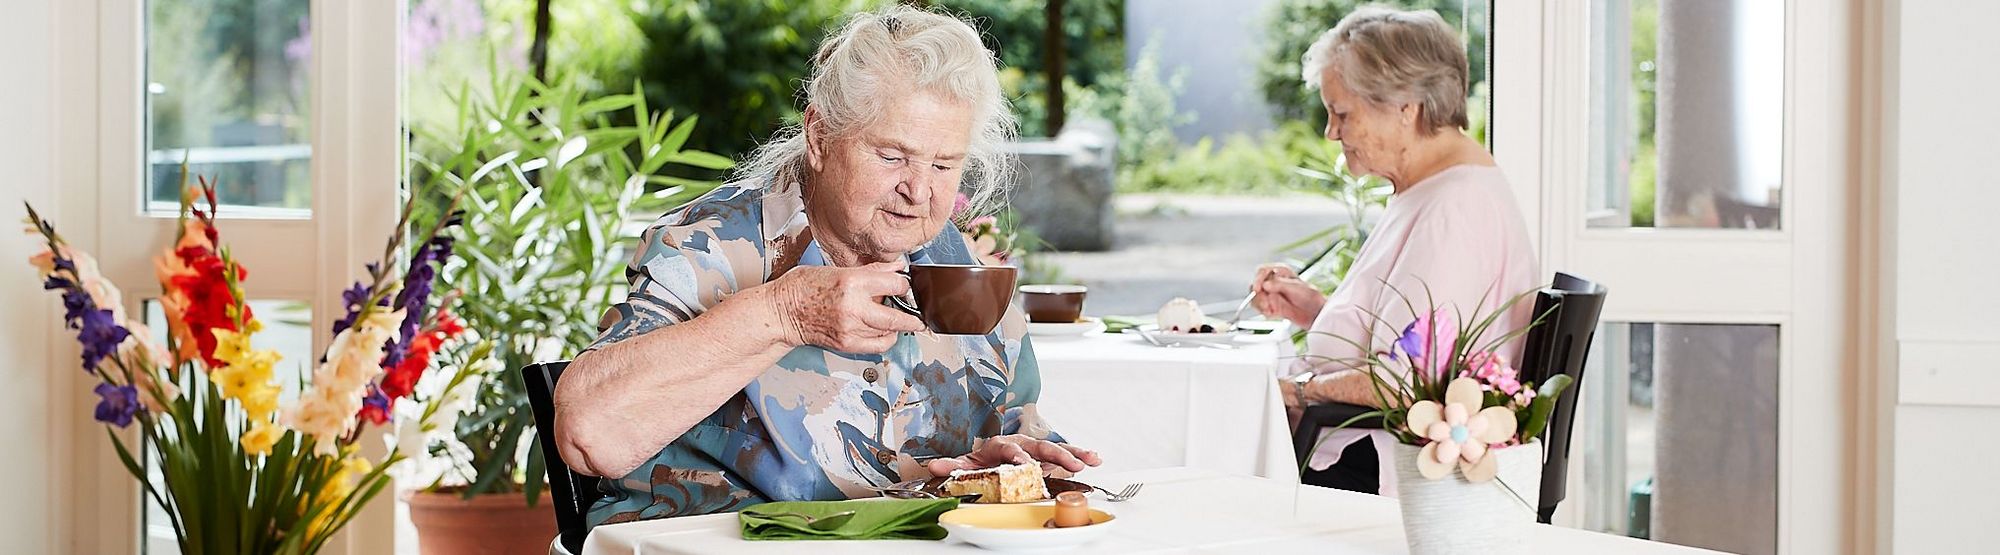 Eine Bewohnerin trinkt Kaffee am Frühstückstisch, der Blick geht durch die geöffnete Türe in den Garten mit viel Grün und schönen Pflanzen.